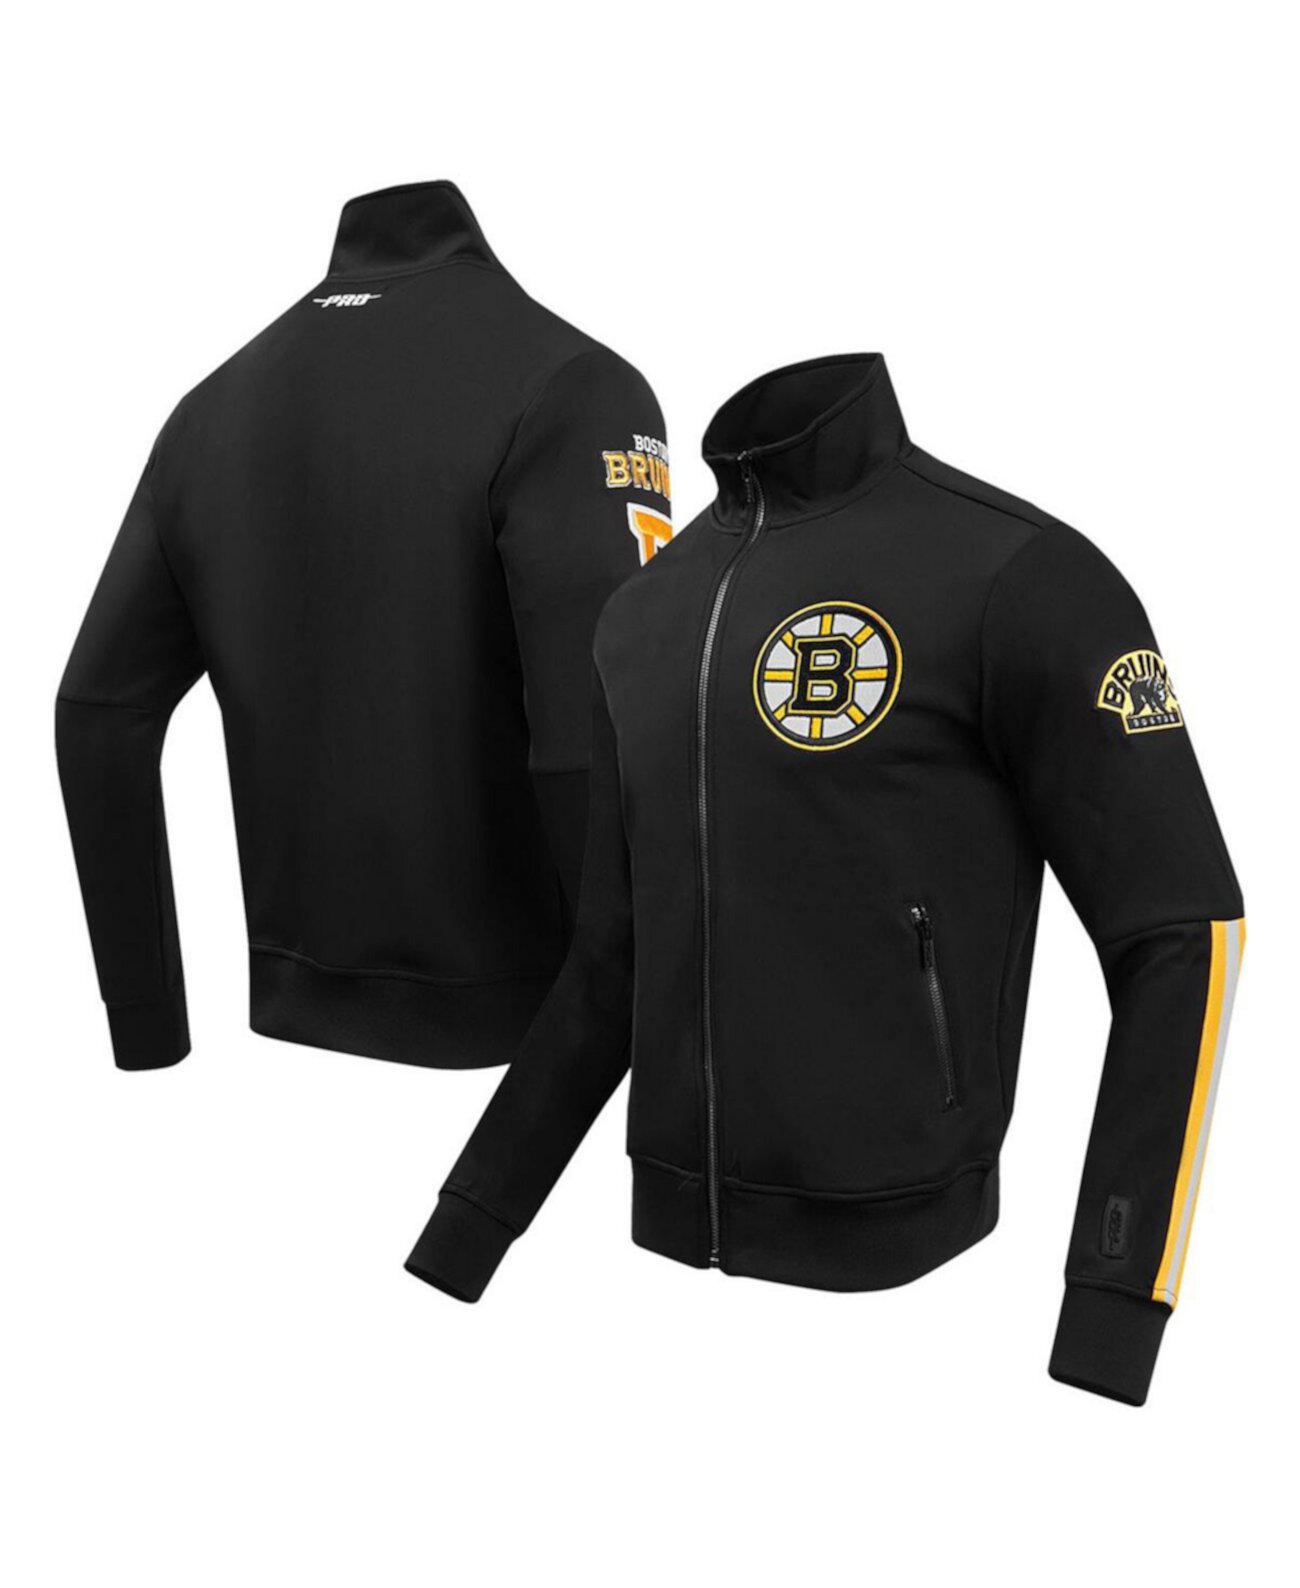 Мужская черная спортивная куртка Boston Bruins Classic с молнией во всю длину из синели Pro Standard